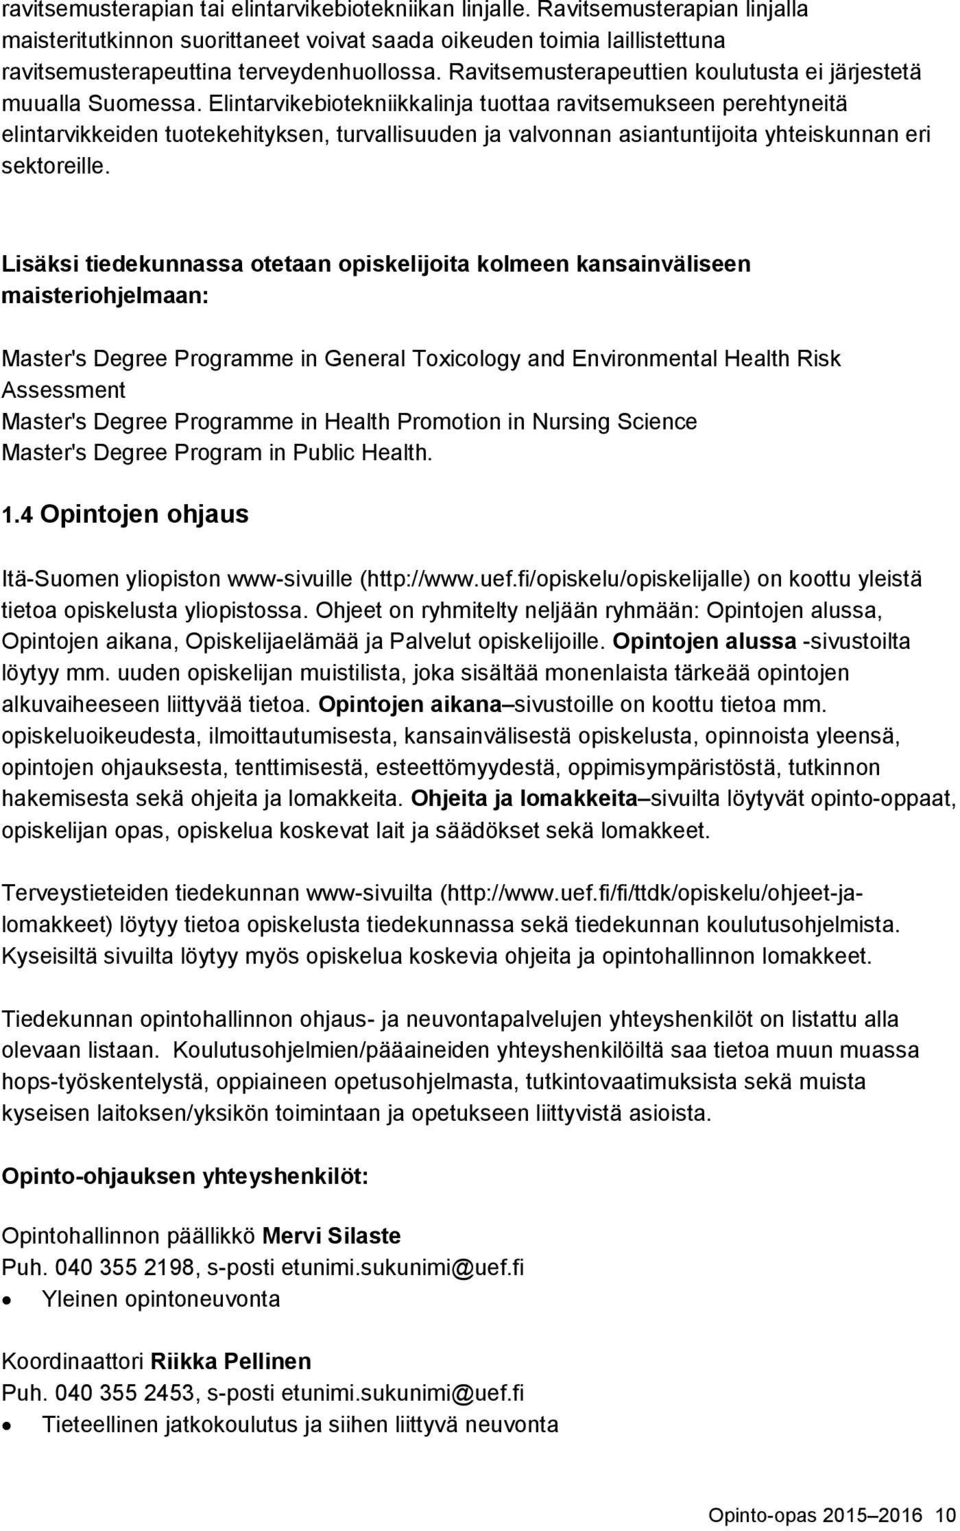 Ravitsemusterapeuttien koulutusta ei järjestetä muualla Suomessa.